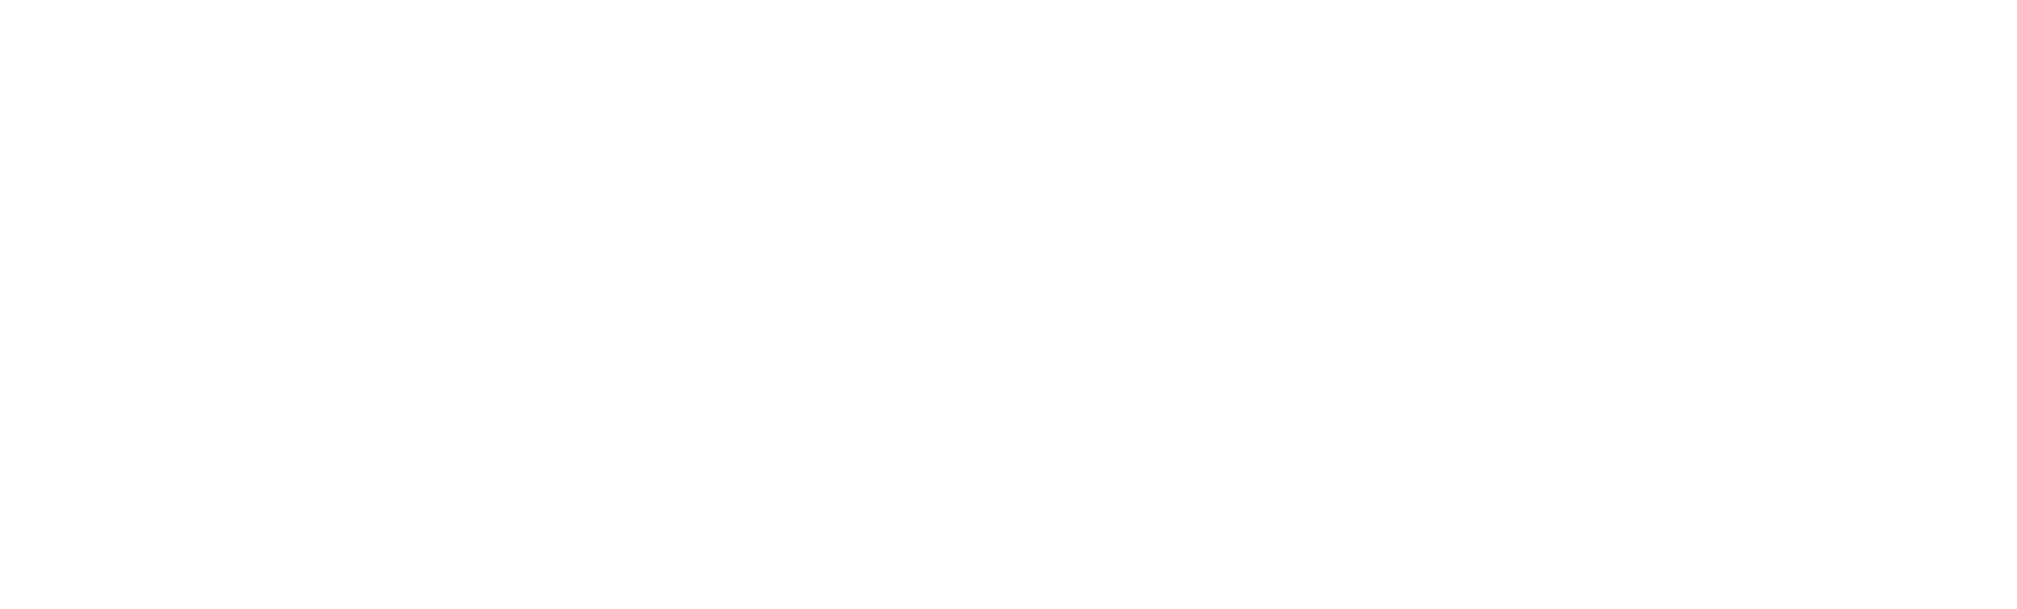 LE PARISIEN logo blanc